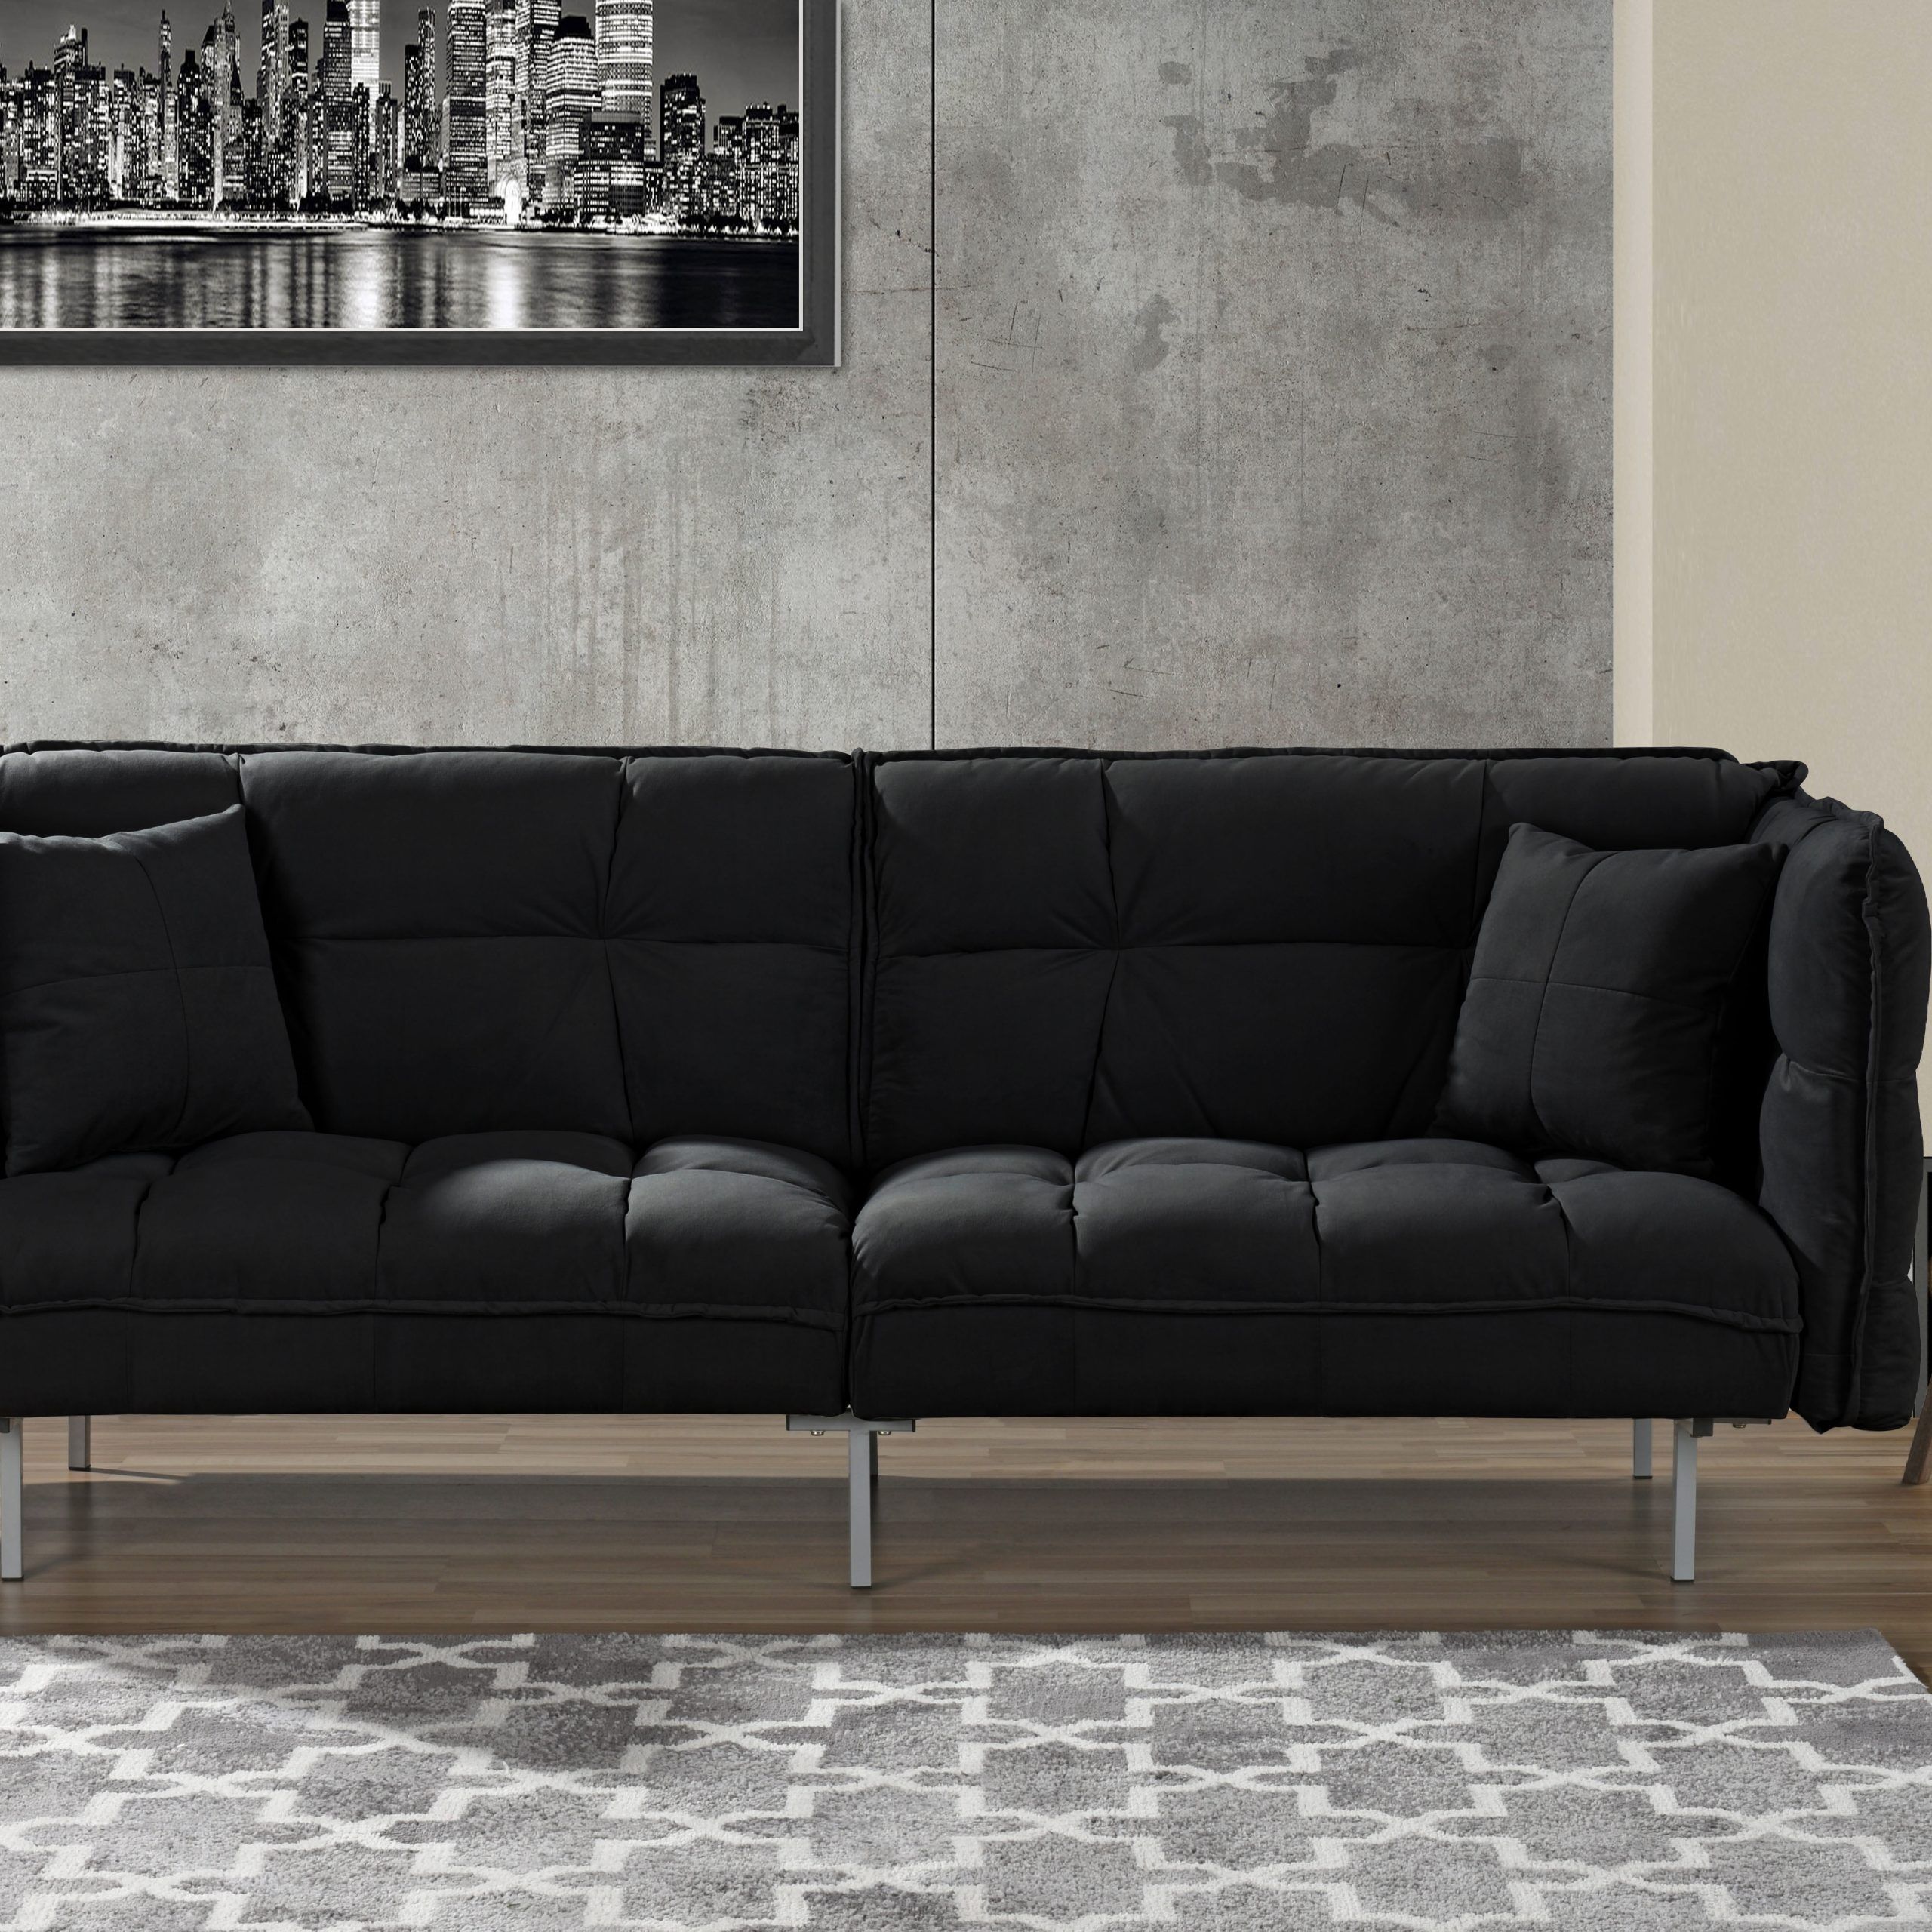 2 Seater Black Velvet Sofa Beds Regarding 2018 Plush Tufted Velvet Sleeper Sofa, Black – Walmart (Photo 10 of 15)